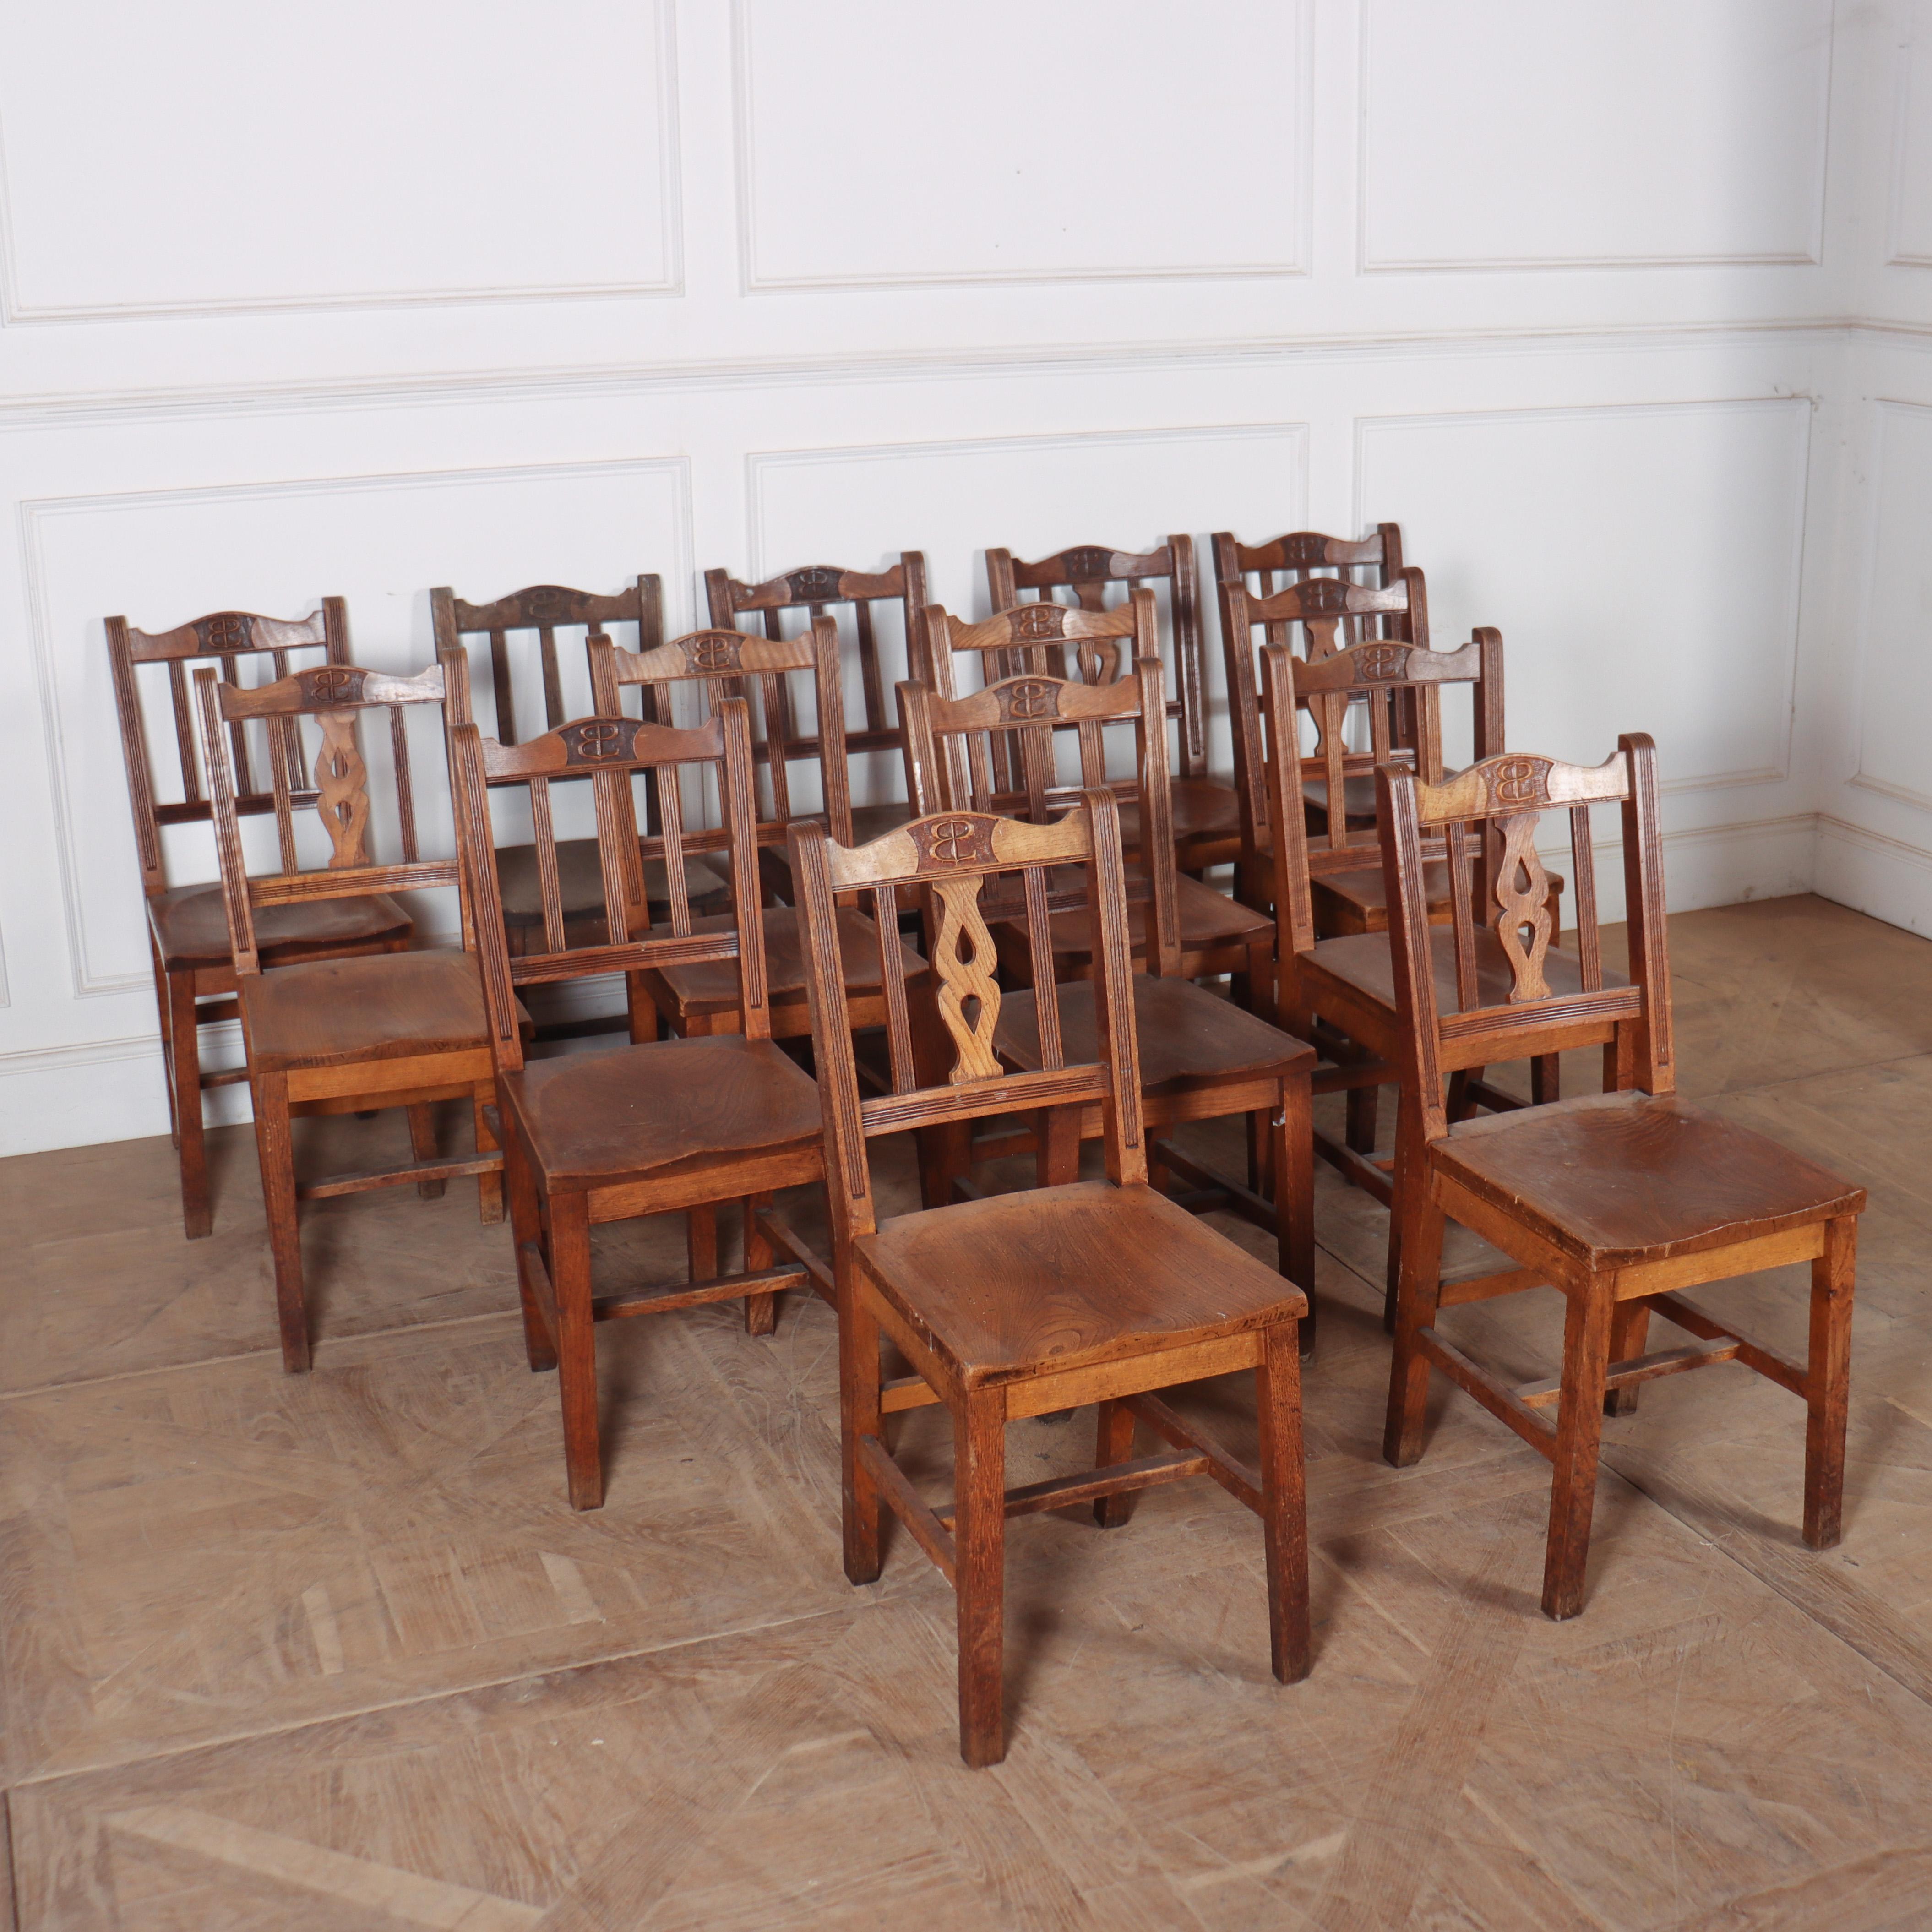 Satz von 14 Kapellenstühlen aus schottischer Ulme. Ideal für ein Restaurant. 1890.

Die Sitzhöhe beträgt 17,5